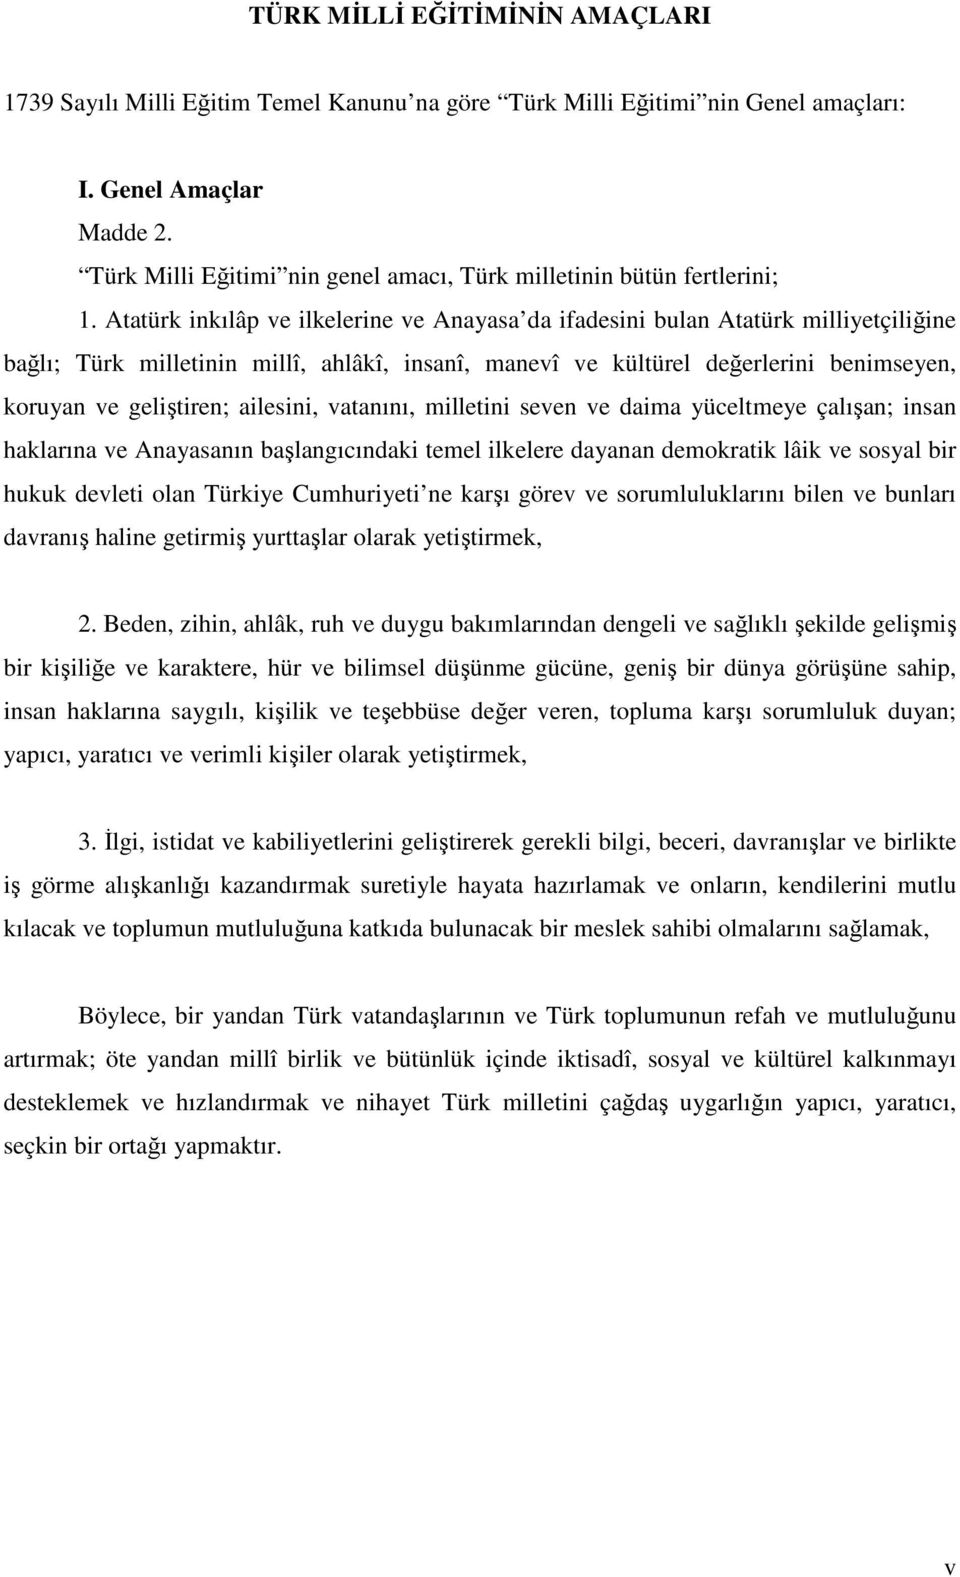 Atatürk inkılâp ve ilkelerine ve Anayasa da ifadesini bulan Atatürk milliyetçiliğine bağlı; Türk milletinin millî, ahlâkî, insanî, manevî ve kültürel değerlerini benimseyen, koruyan ve geliştiren;